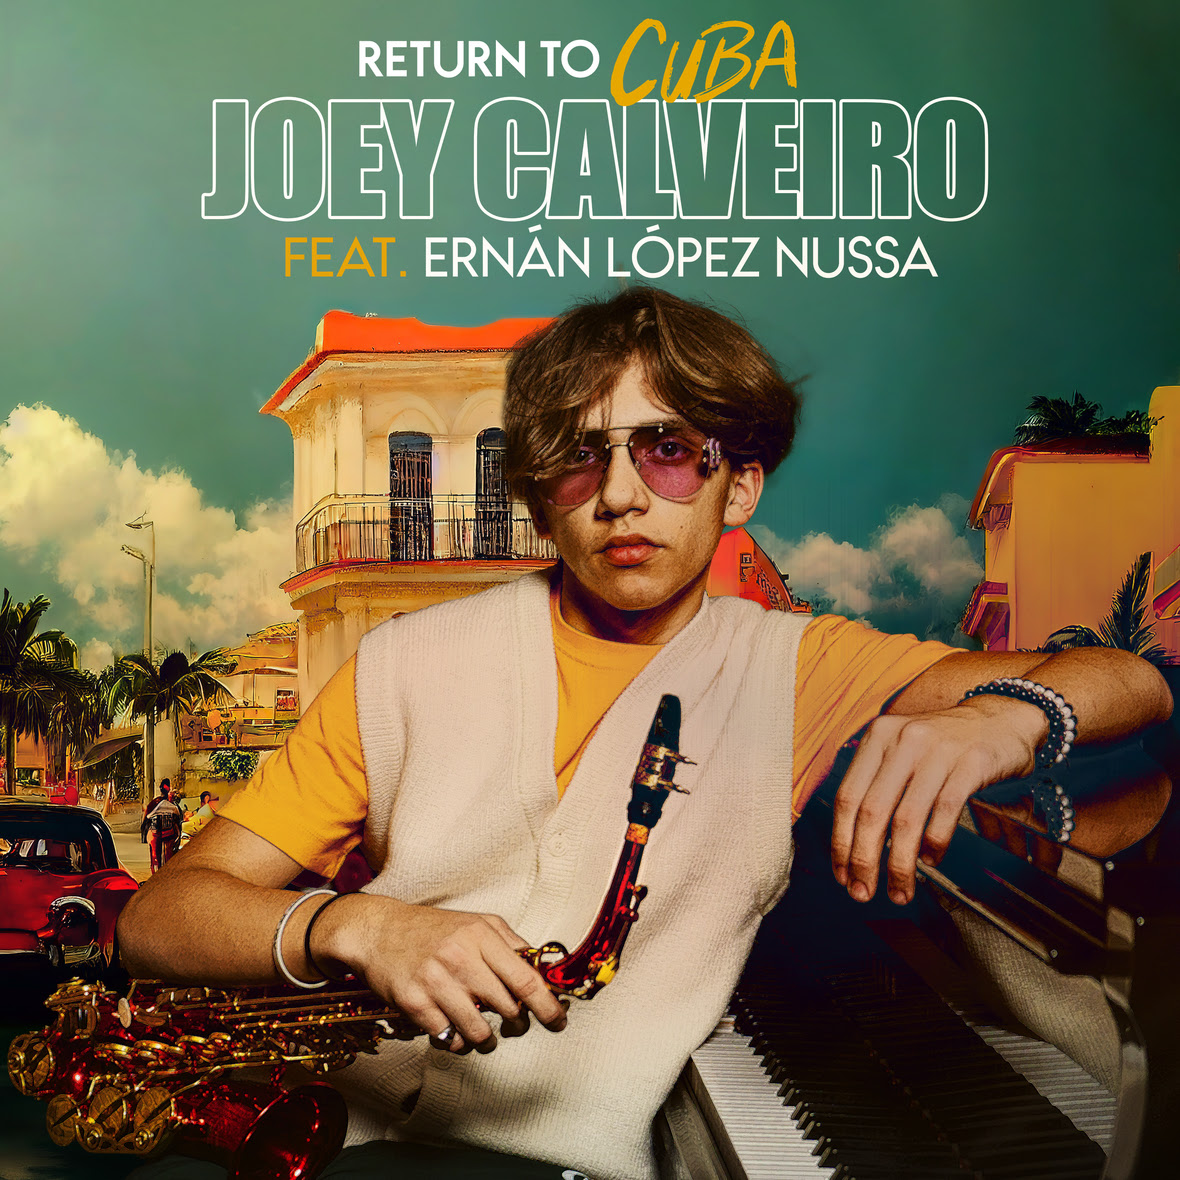 "Return To Cuba" la joya musical del joven Joey Calveiro y el experimentado Ernán López Nussa